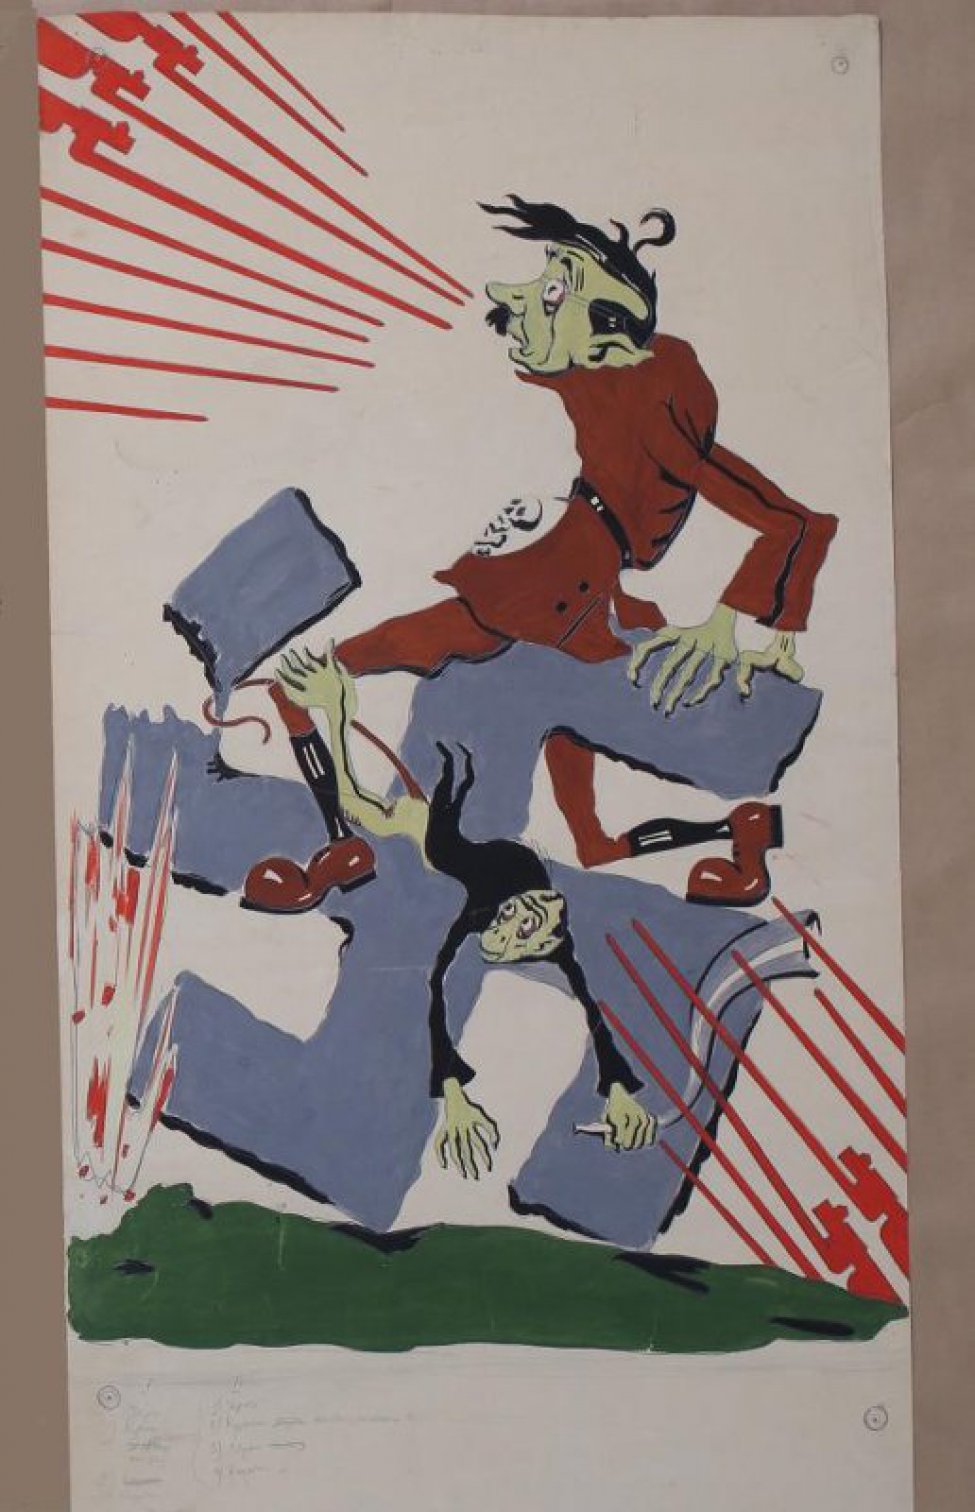 В центре композиции изображен падающий с развалившегося креста мужчина. Другой мужчина еле удерживается на свастике. Слева вверху изображены красные штыки винтовок  направленные на мужчин.